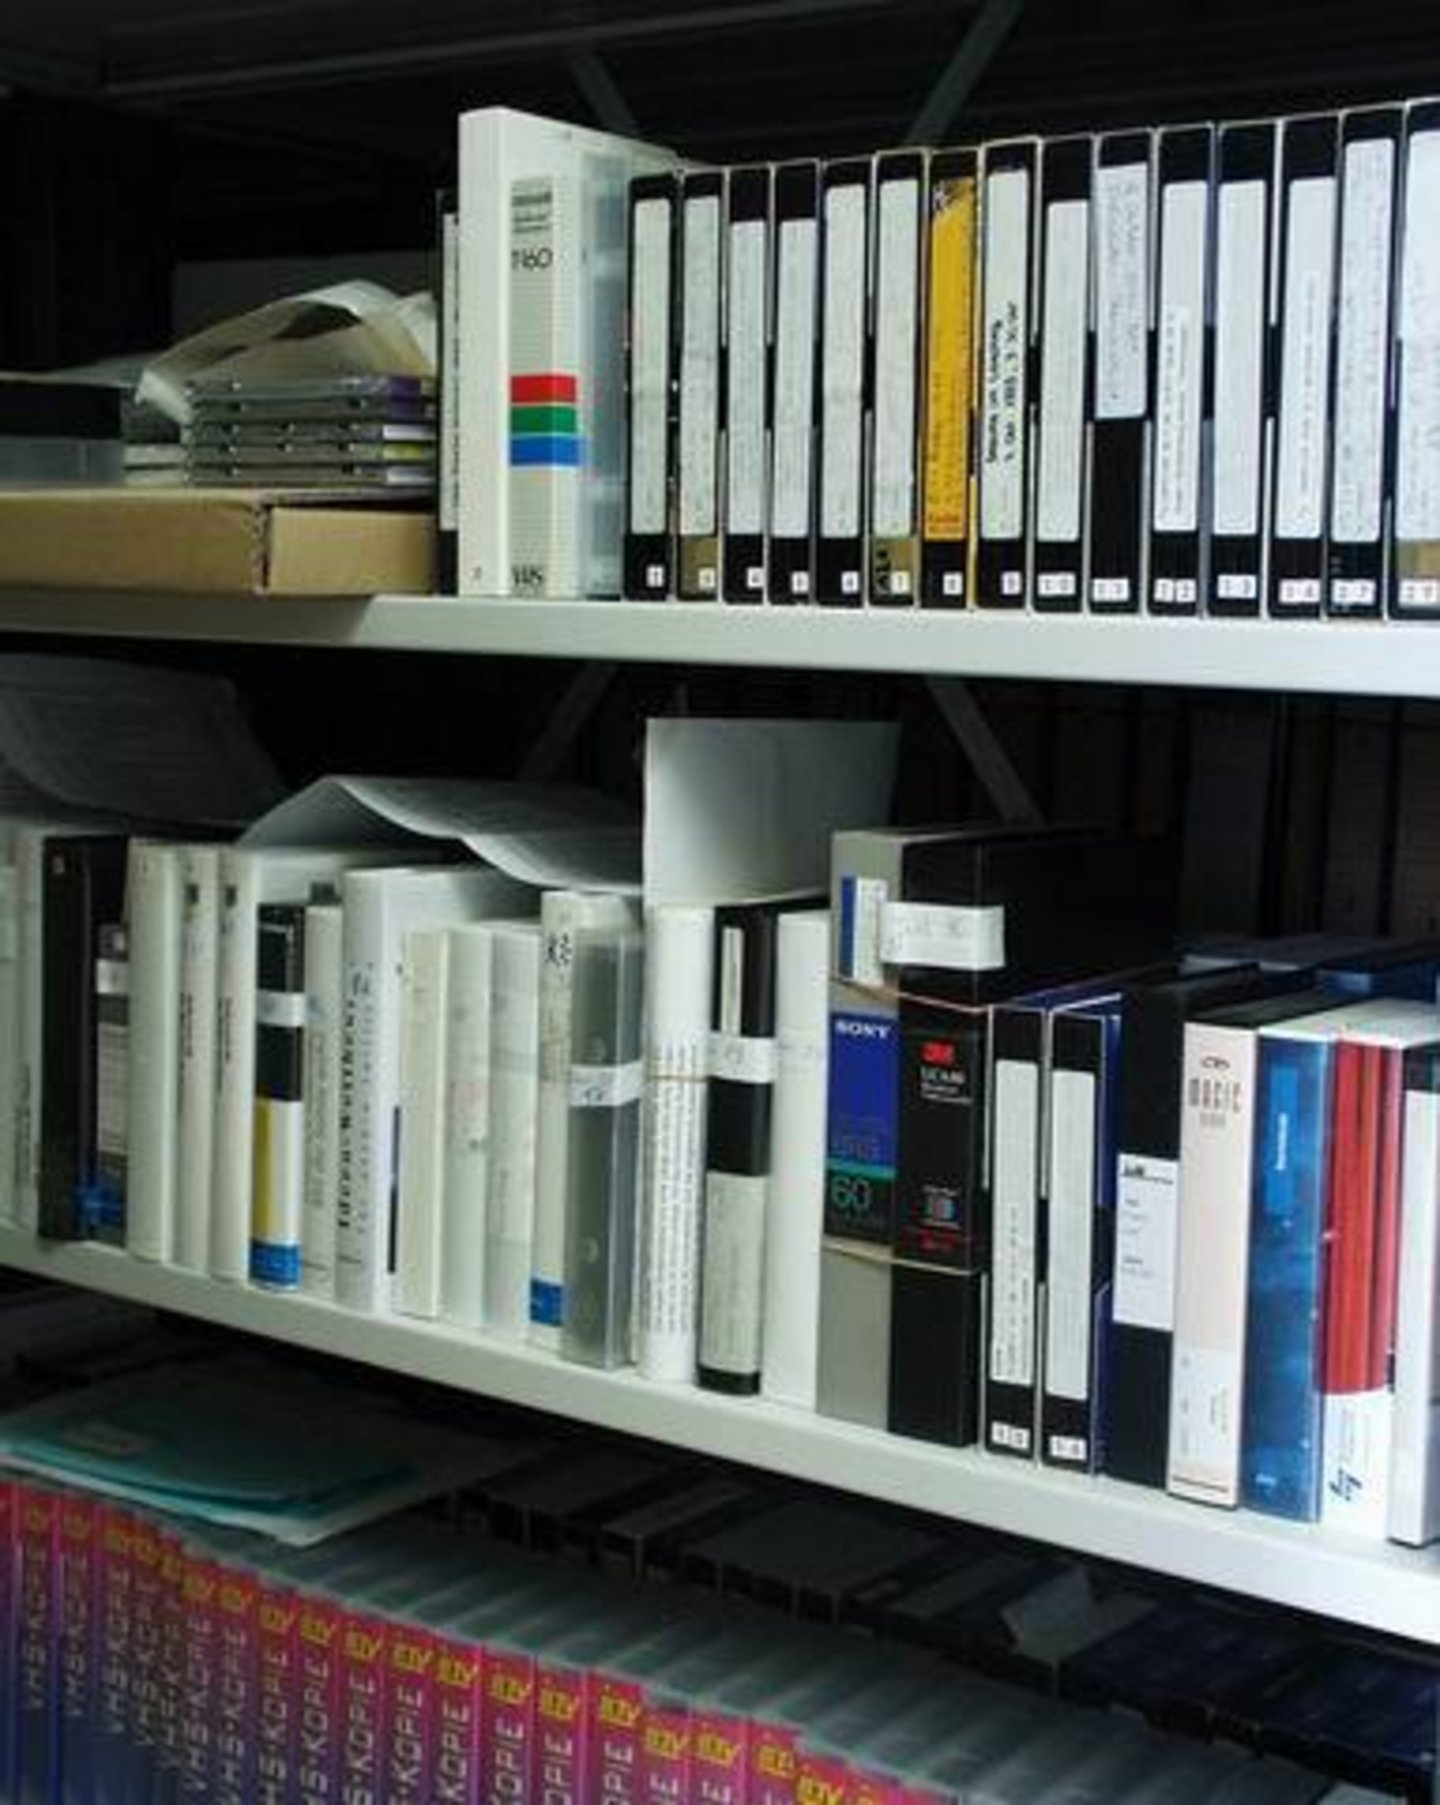 Sofern sie im Zusammenhang mit der Geschäftstätigkeit der Archivierenden entstanden sind, gehören auch Videofilme zum Archivgut. Die kurze Haltbarkeit der Magnetbänder freilich treibt den Archivaren Sorgenfalten auf die Stirn.